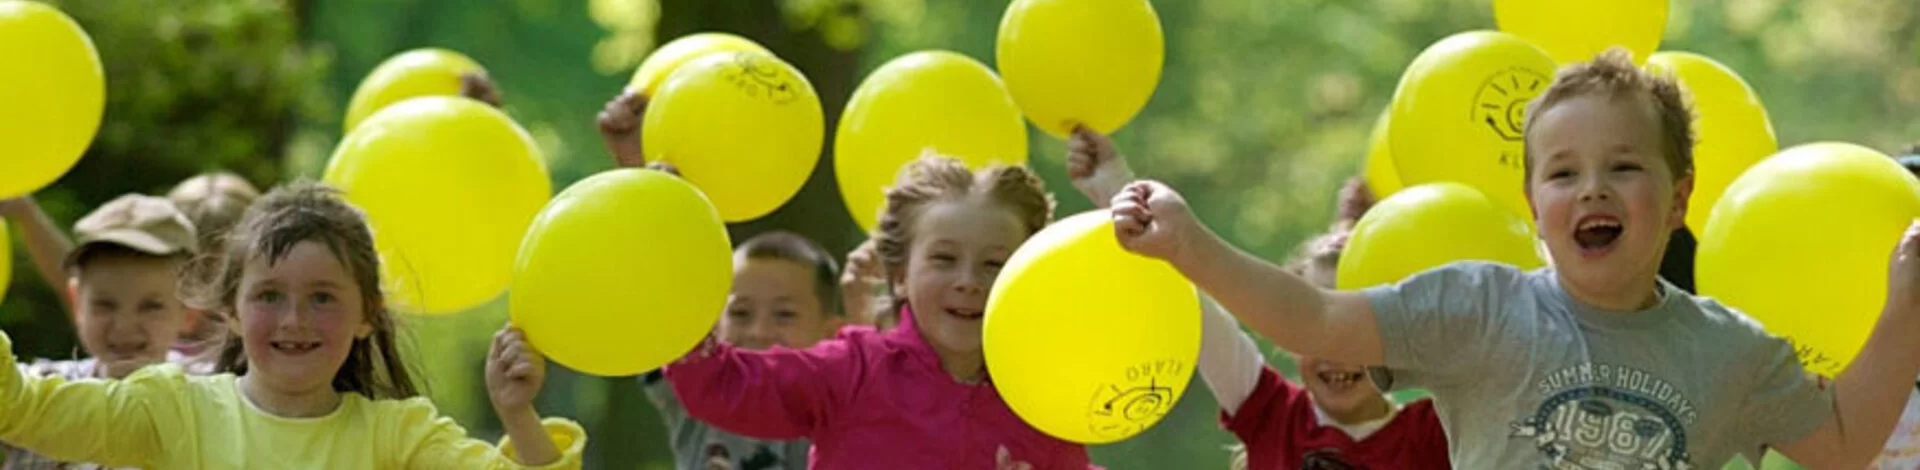 Lachende Kinder rennen bei Sonnenschein mit gelben Luftballons in der Hand durch einen Wald.